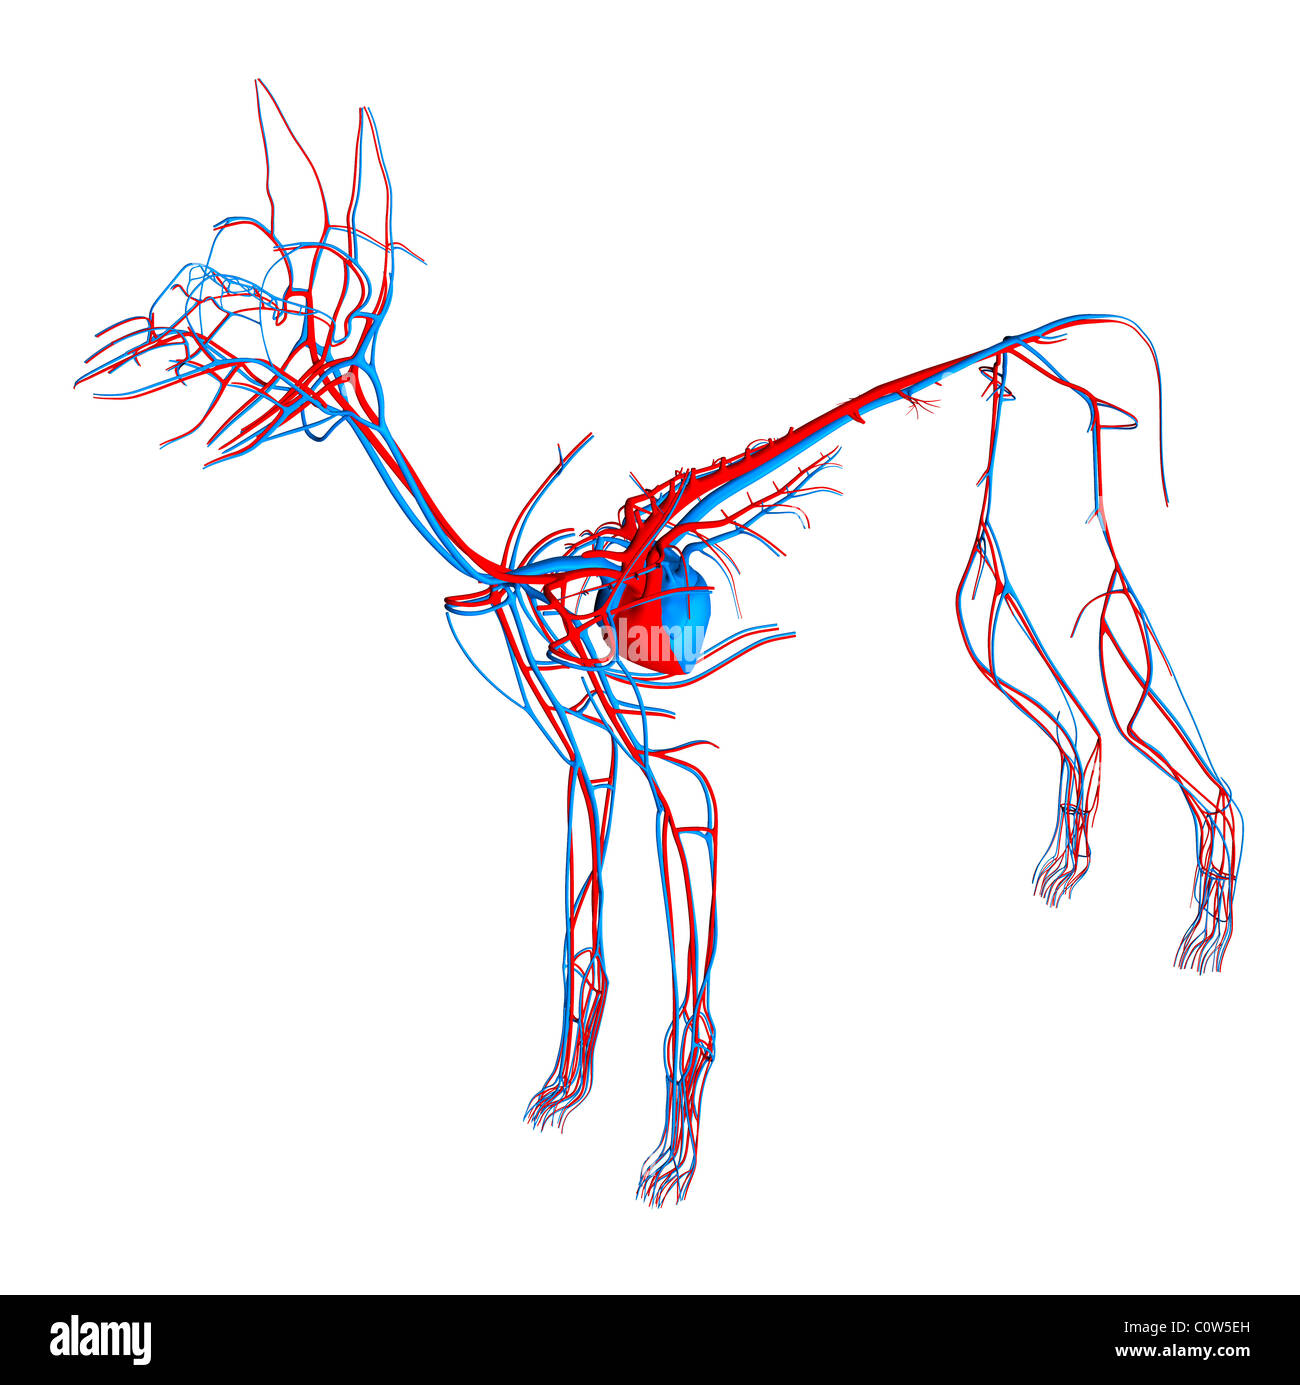 Hund-Anatomie-Herz-Kreislauf Stockfotografie - Alamy